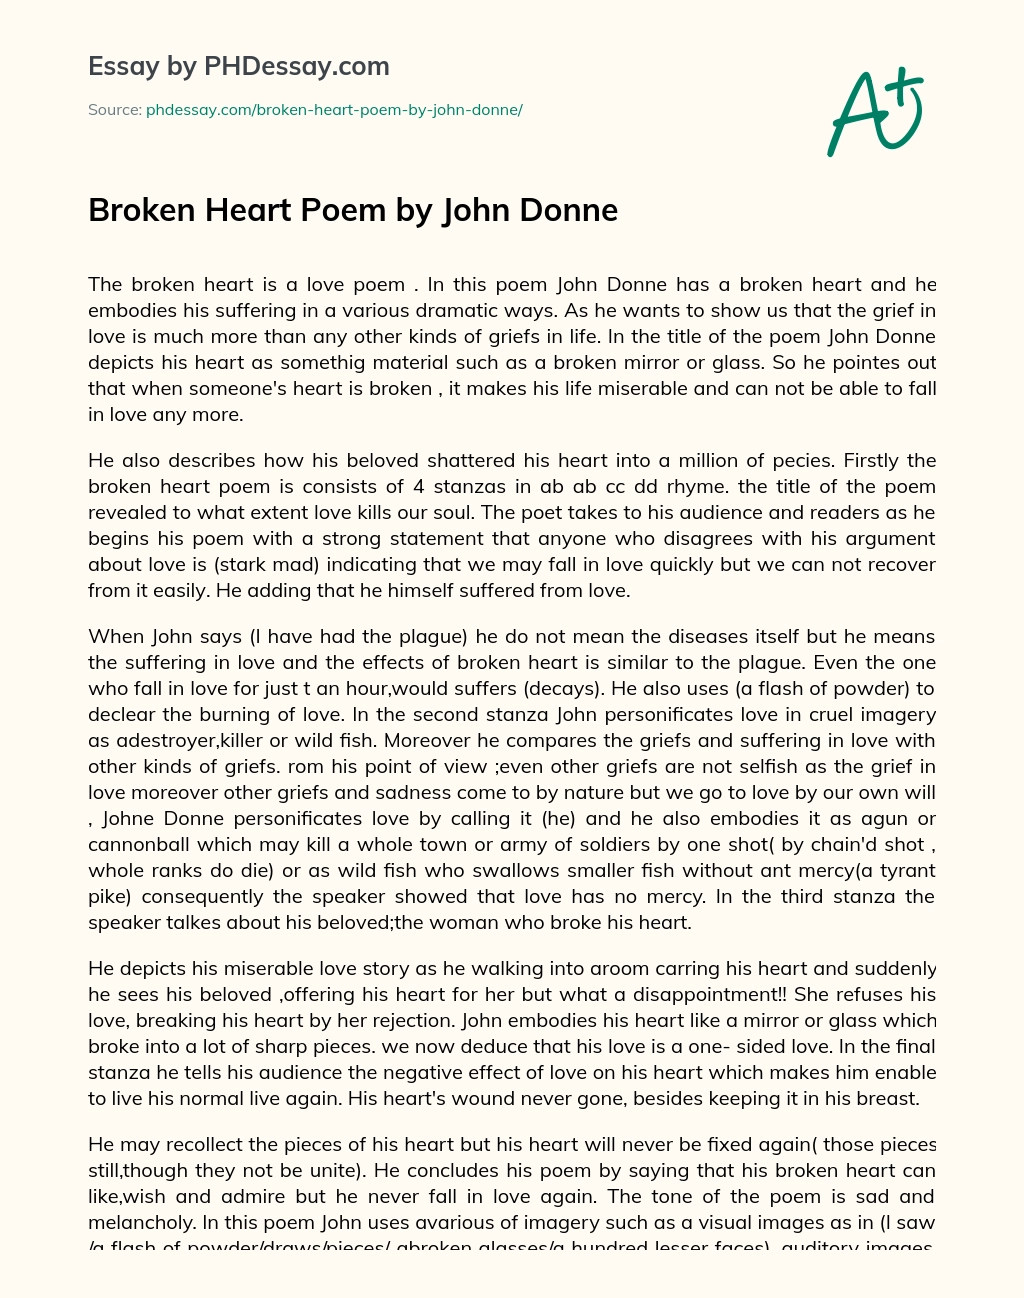 Broken Heart Poem by John Donne essay